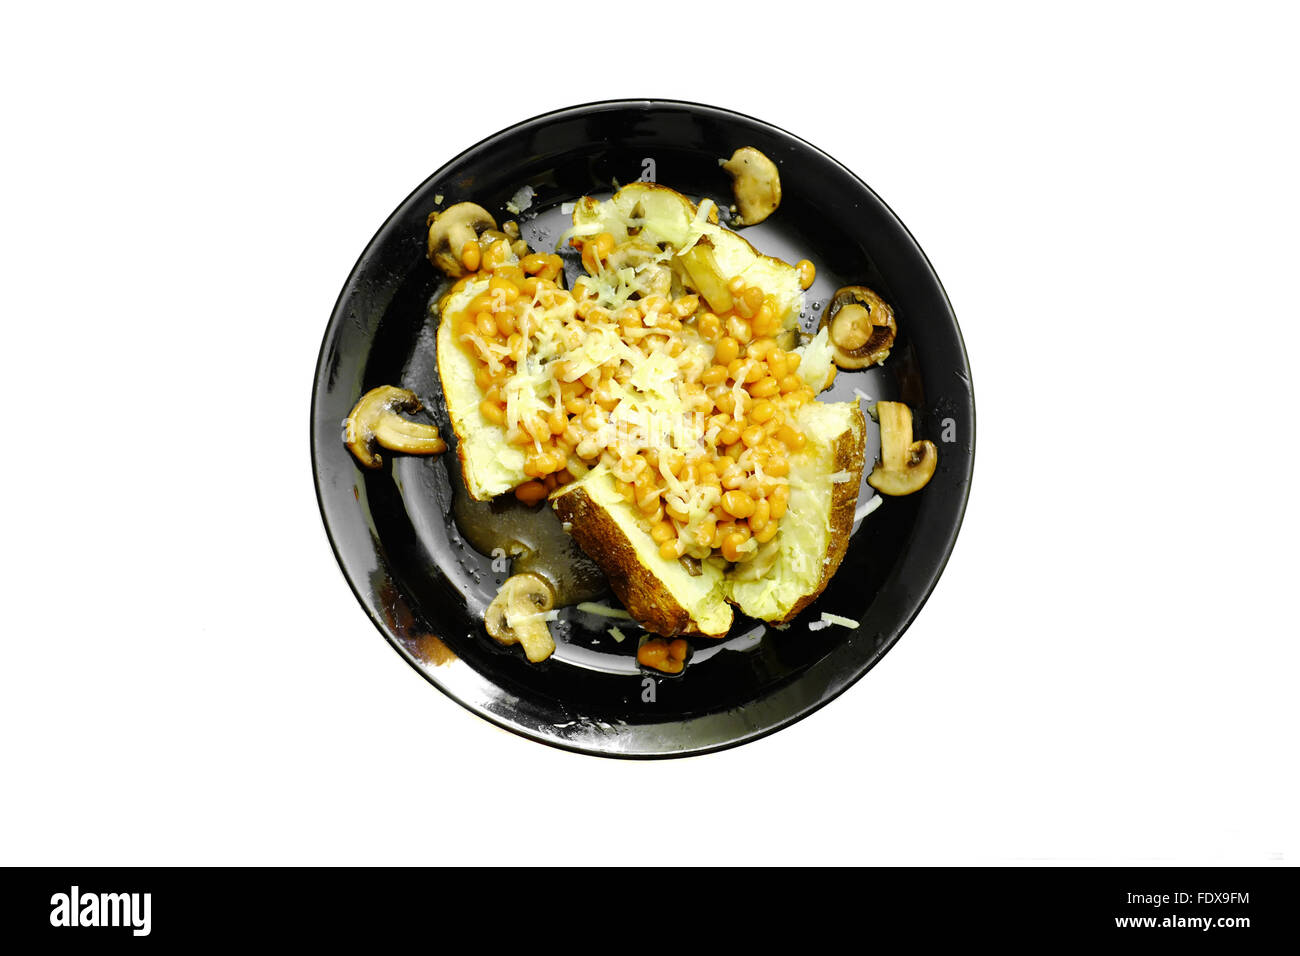 Eine Ofenkartoffel mit Bohnen, Pilzen und Käse auf einer schwarzen Platte vor weißem Hintergrund fotografiert Stockfoto